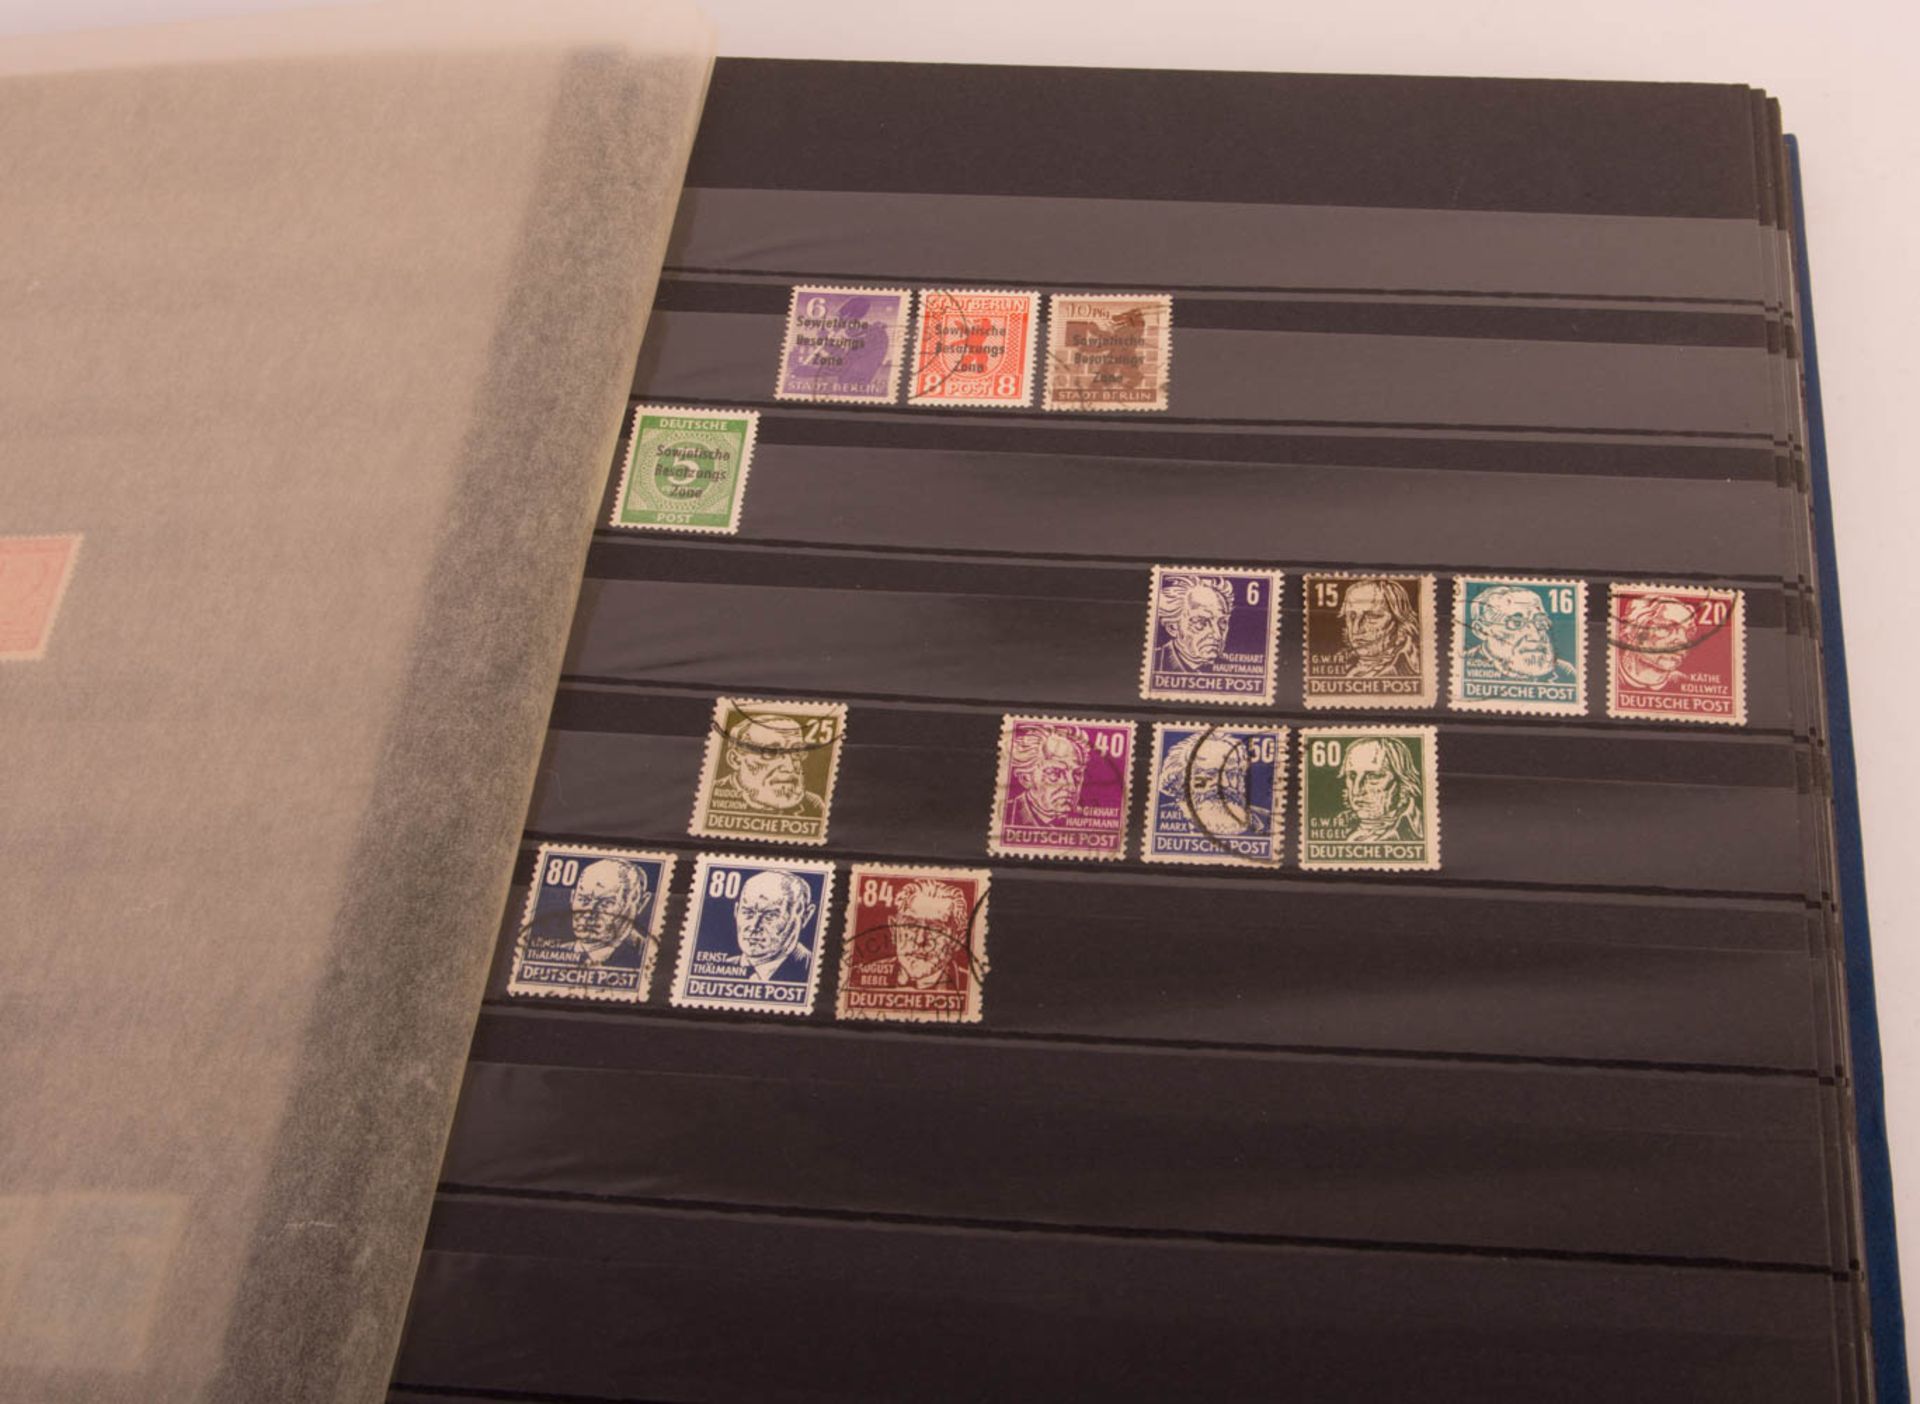 Konvolut von drei Briefmarkenalben, unterschiedliche Sammlungen. - Bild 2 aus 5